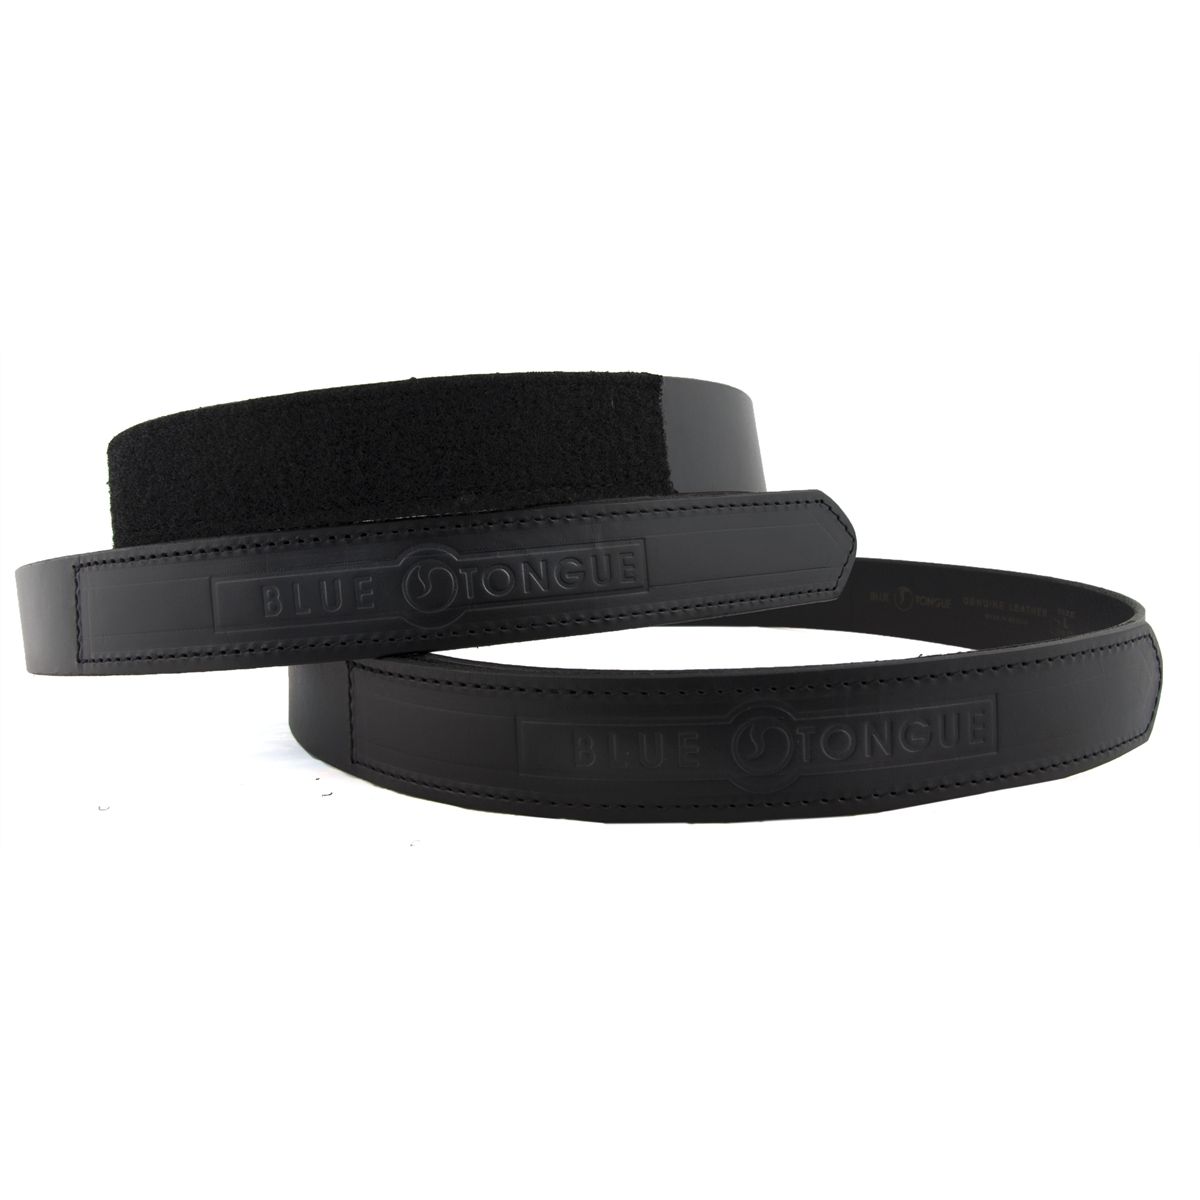 Blue Tongue Black Velcro enclosure belt Fits sizes 44-46 BTBXXL